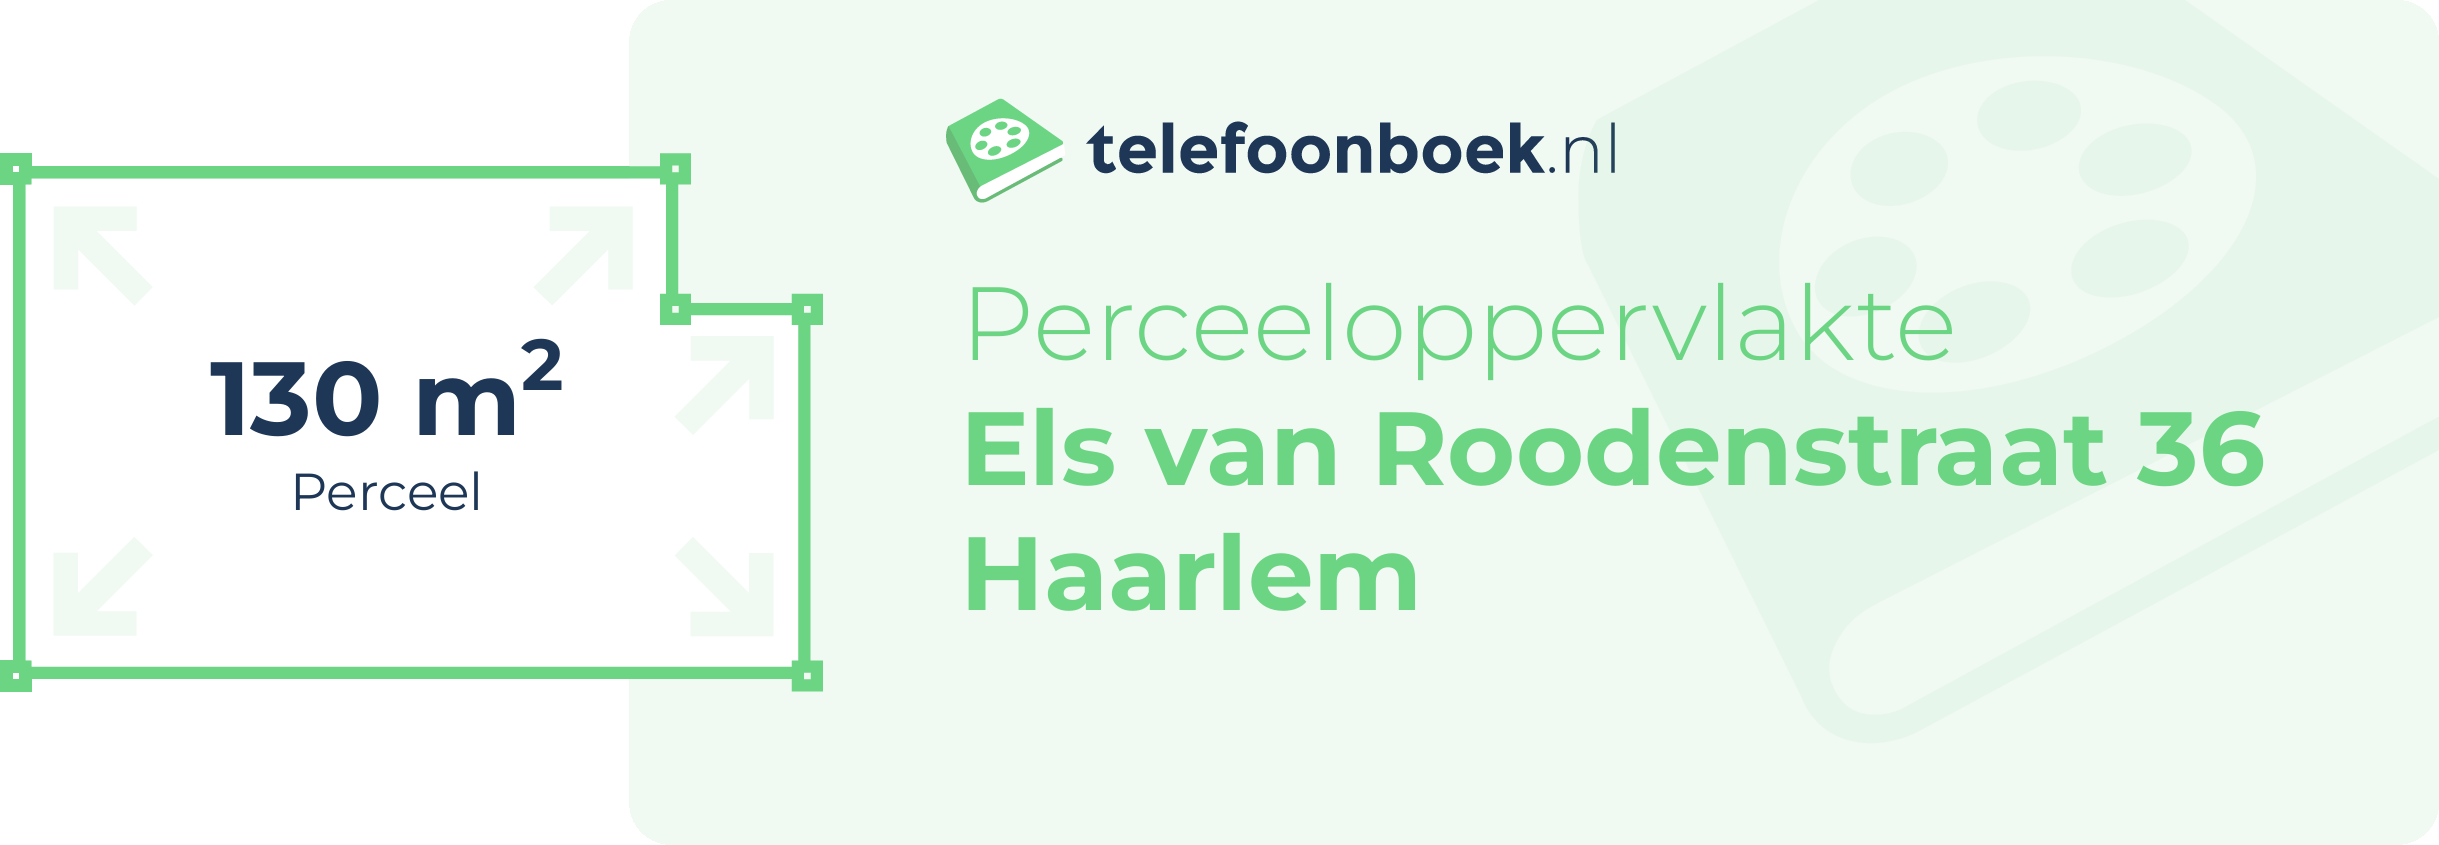 Perceeloppervlakte Els Van Roodenstraat 36 Haarlem